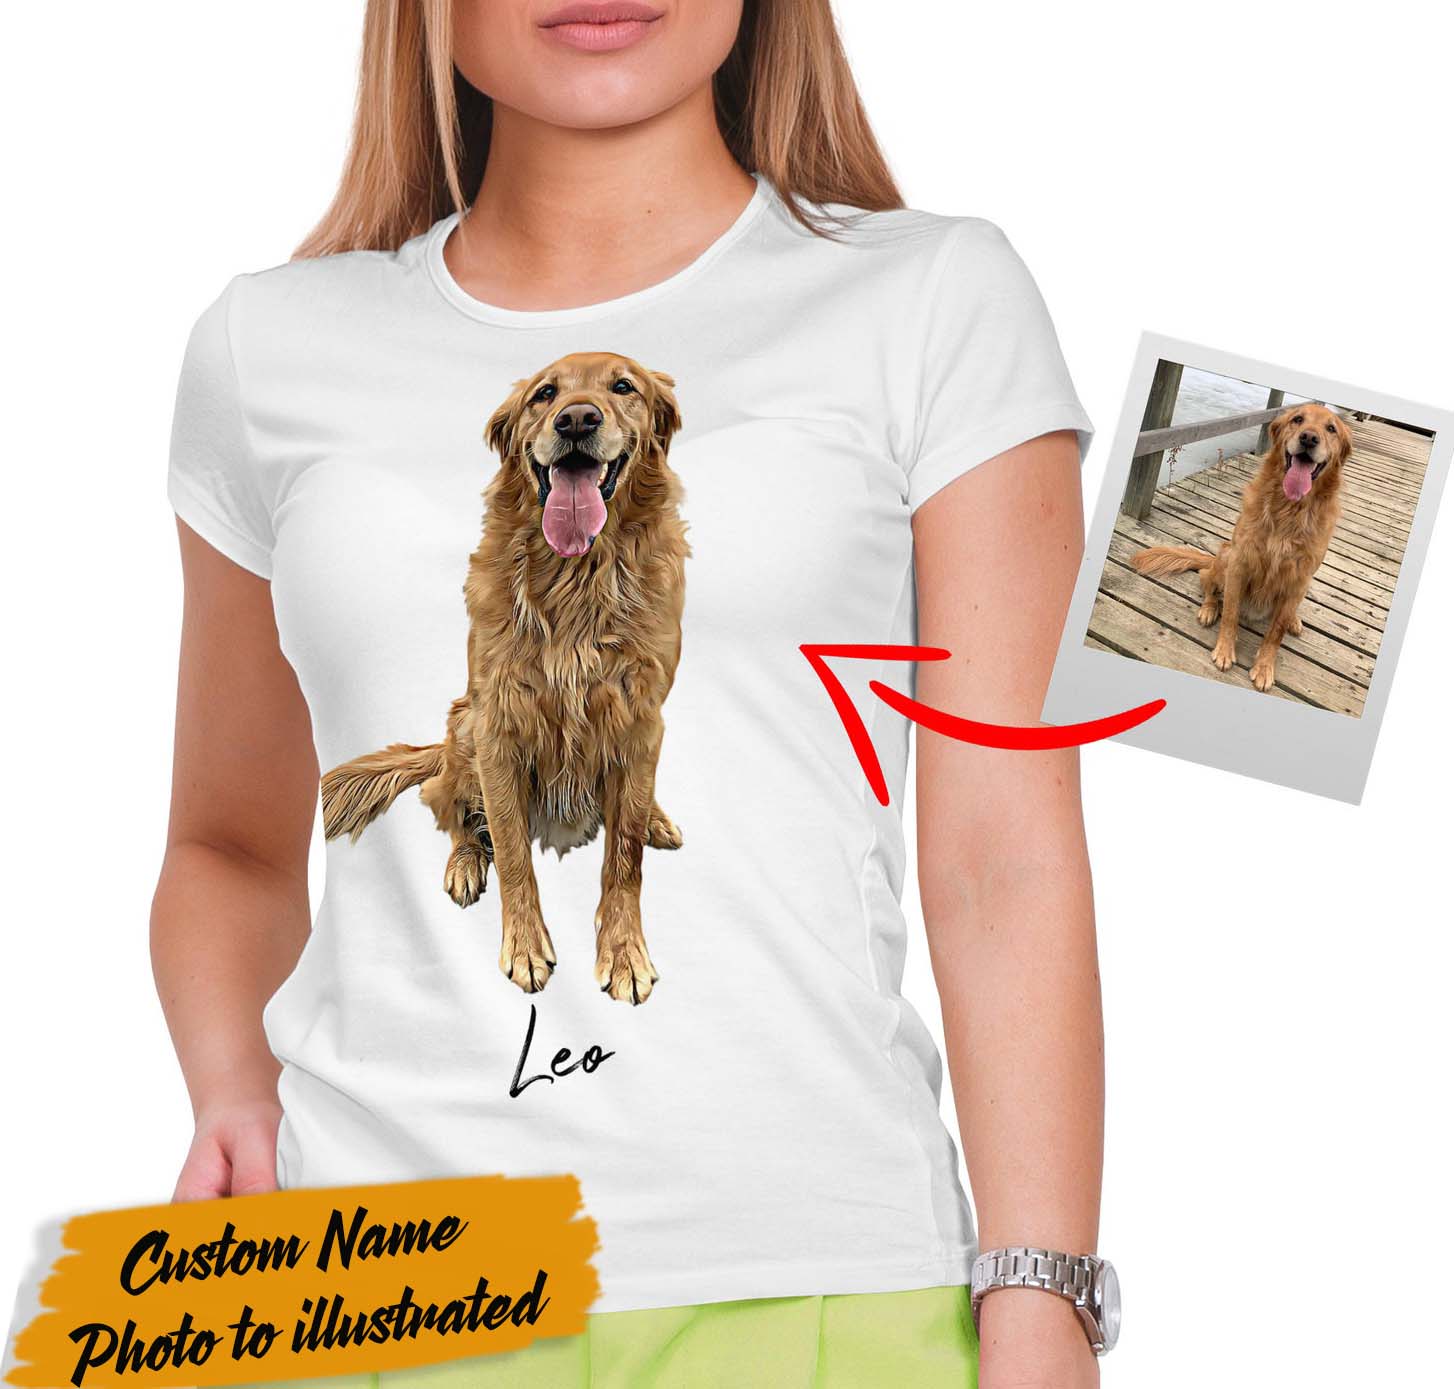 Custom Dog Photo to illustrated Unisex Tshirt, Personalized Name and Photo T-shirt